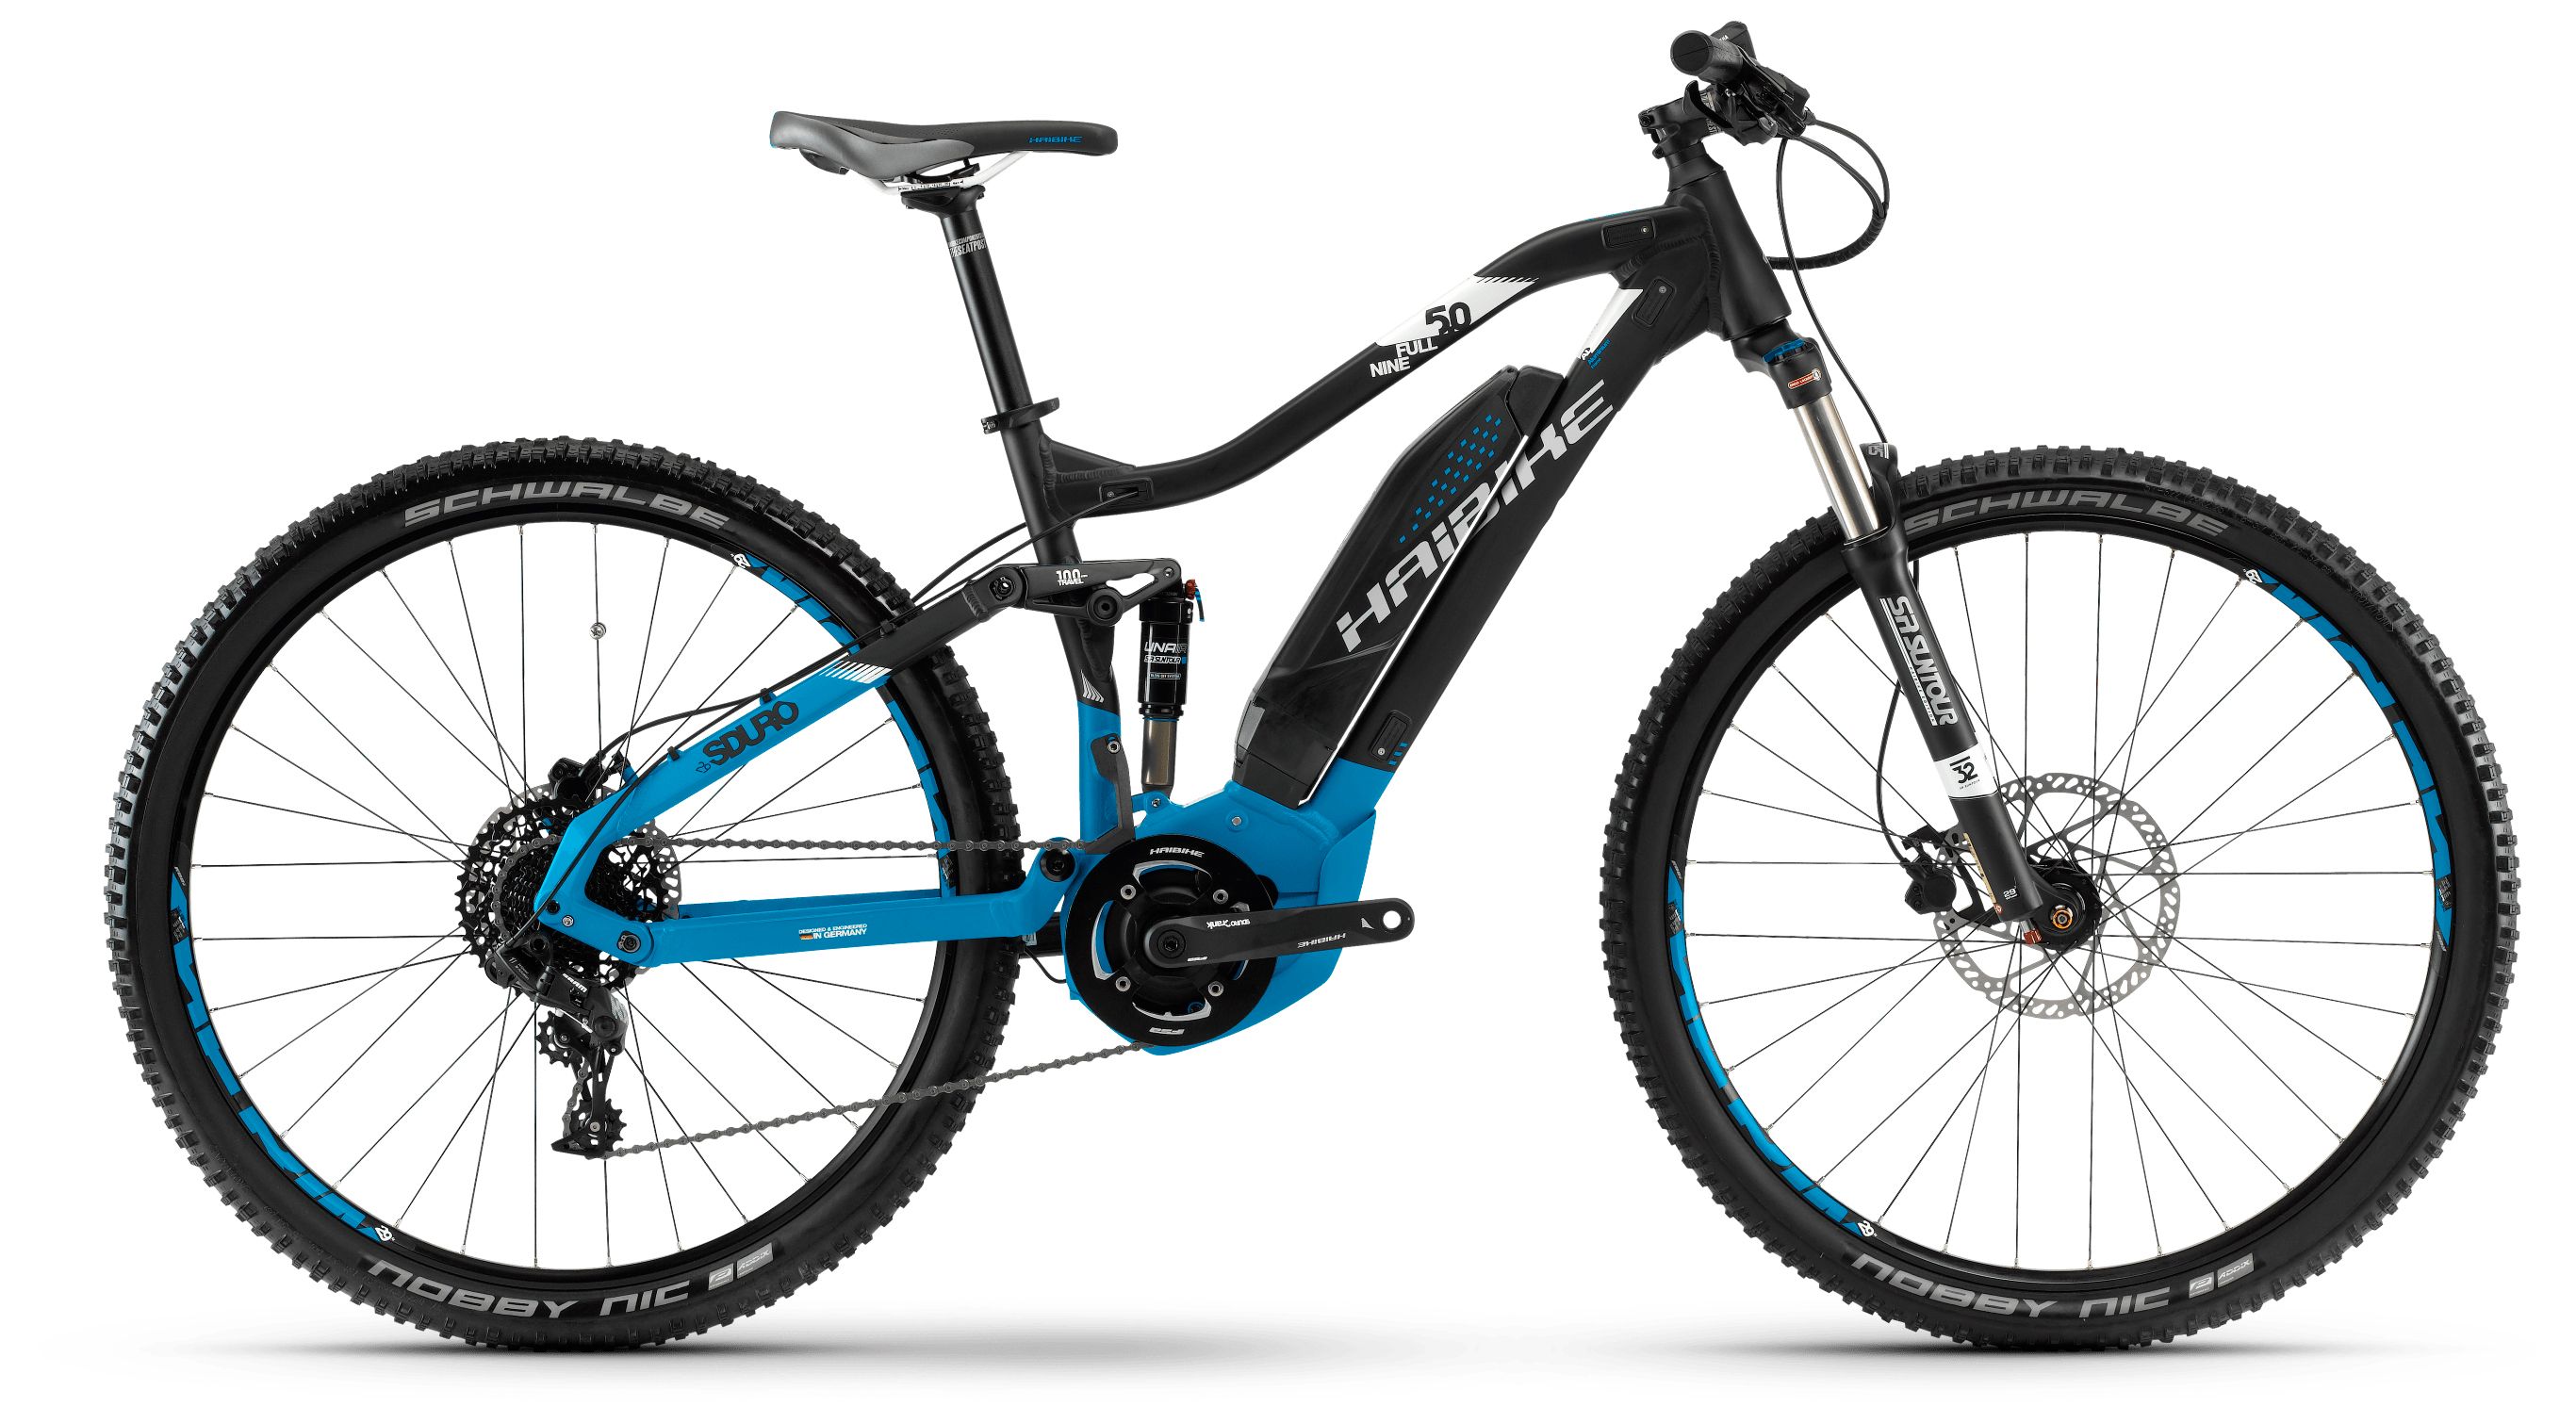  Отзывы о Горном велосипеде Haibike Sduro FullNine 5.0 400Wh 11s NX 2018